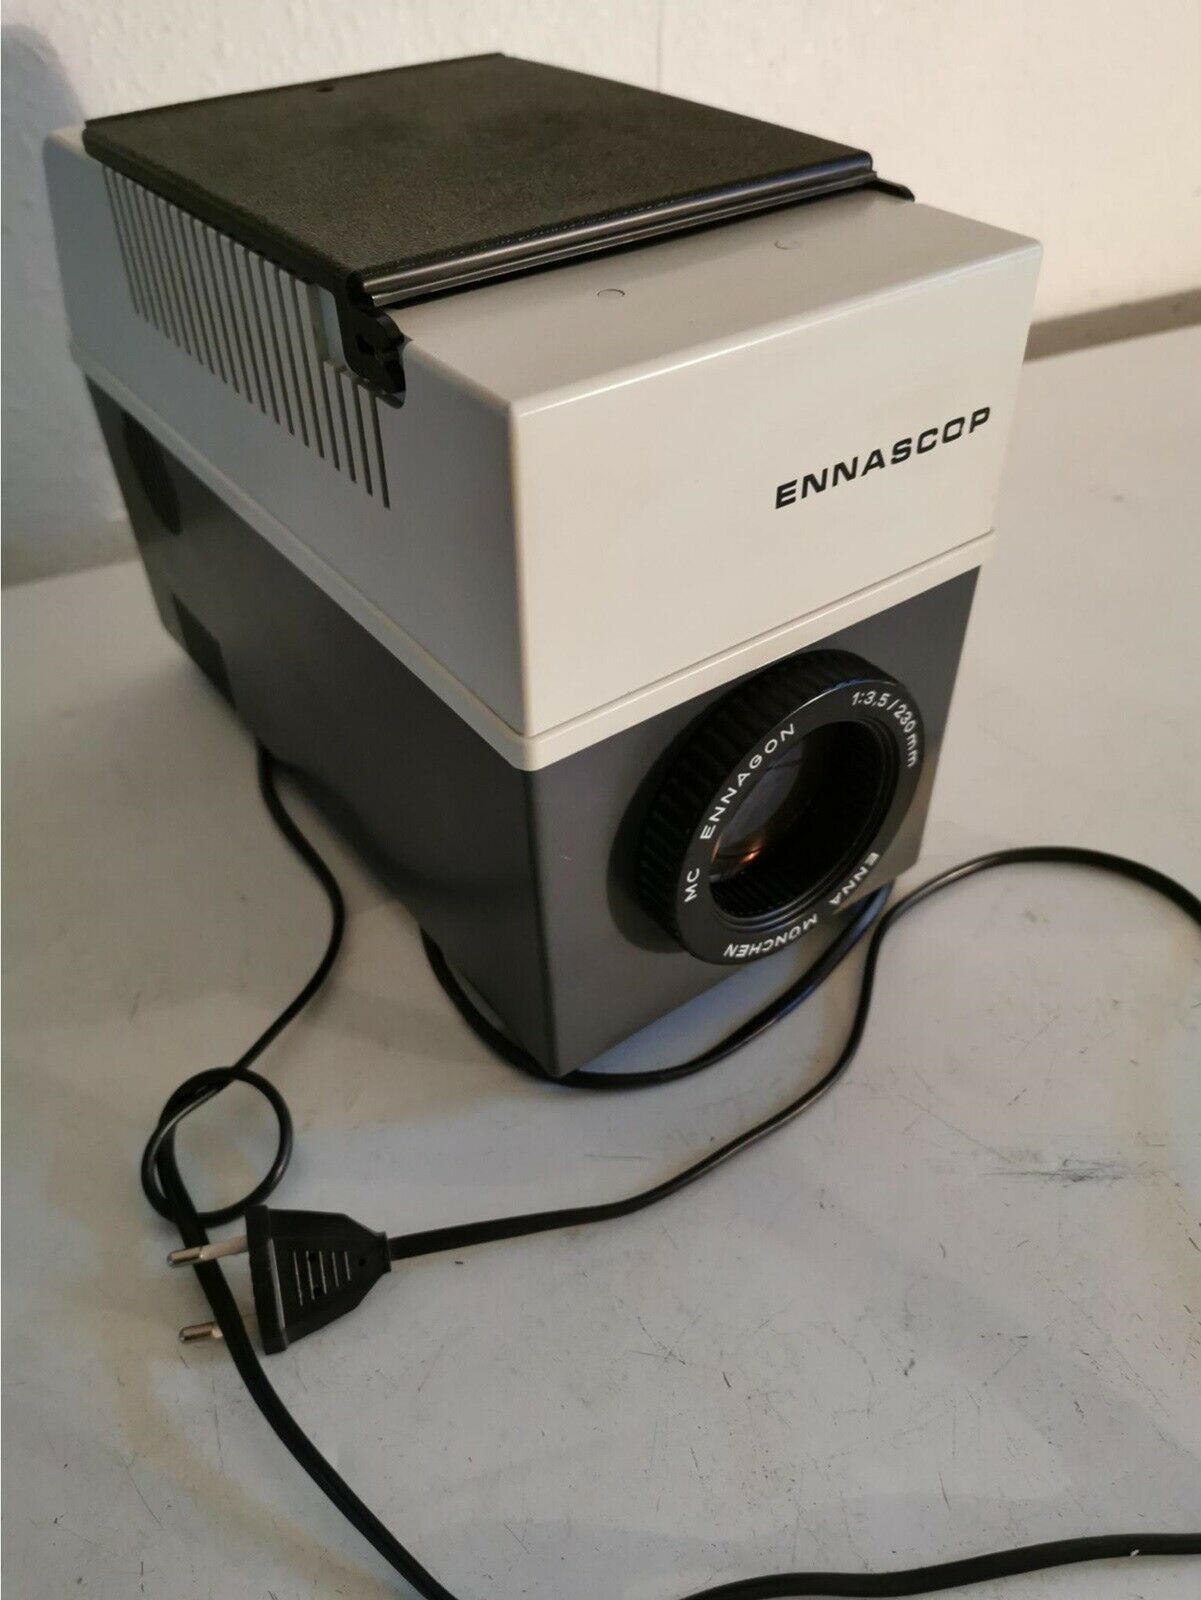 Projektor, Ennascop, 8007D